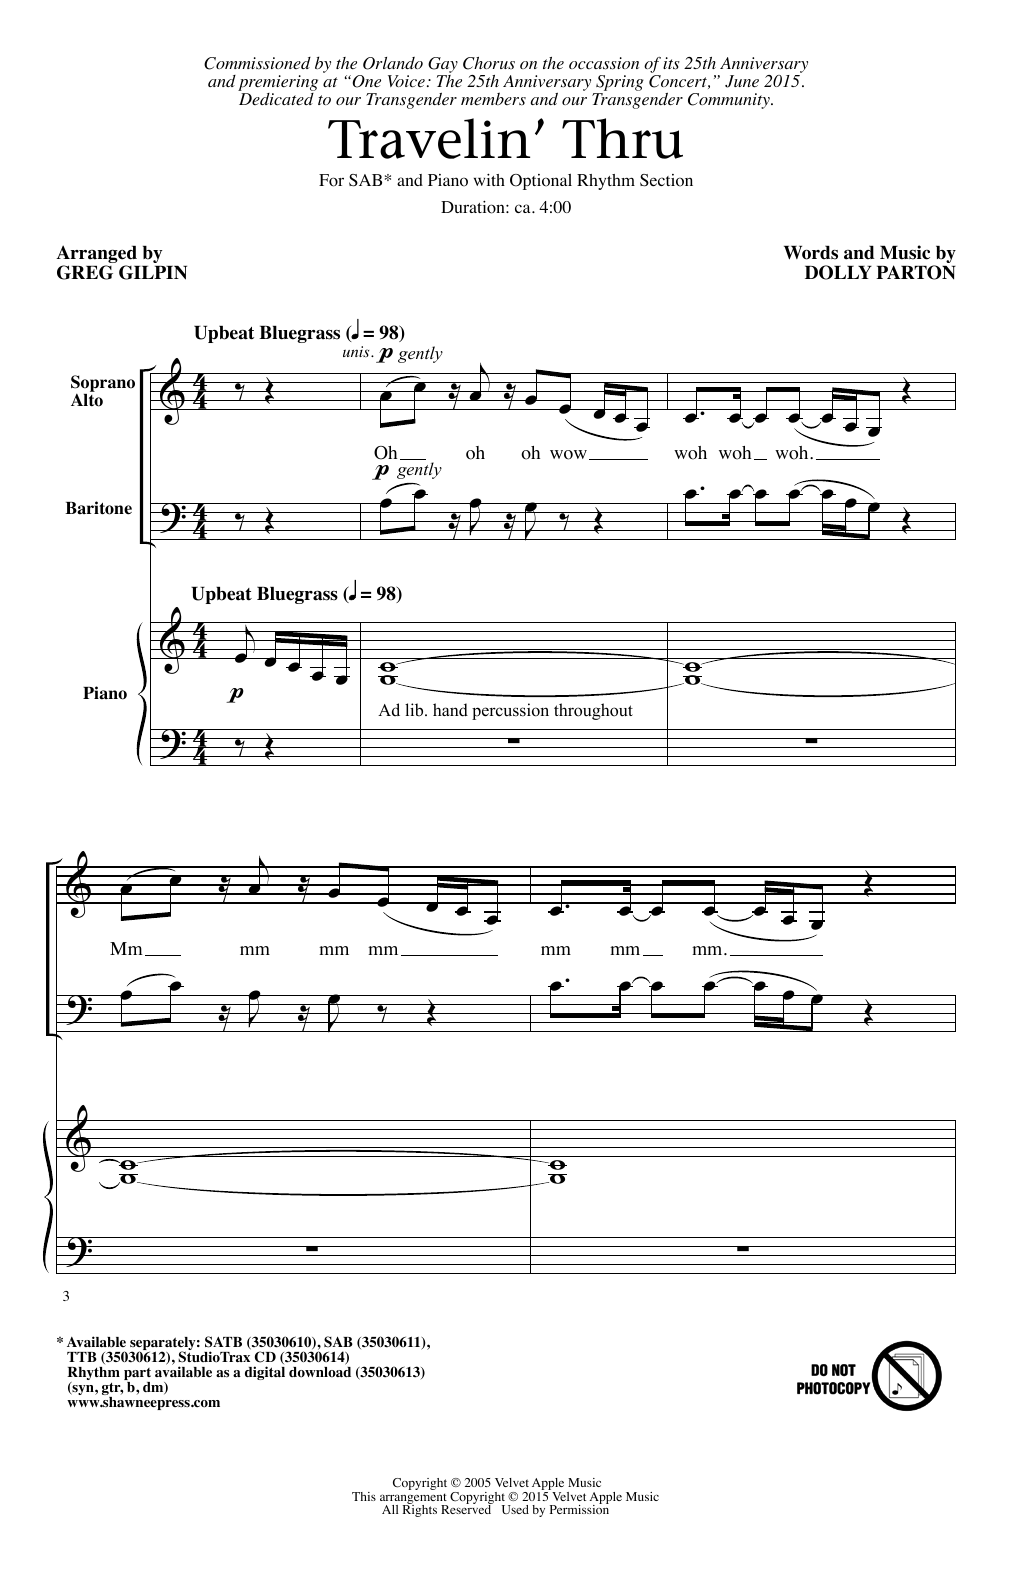 Greg Gilpin Travelin' Thru Sheet Music Notes & Chords for SAB - Download or Print PDF